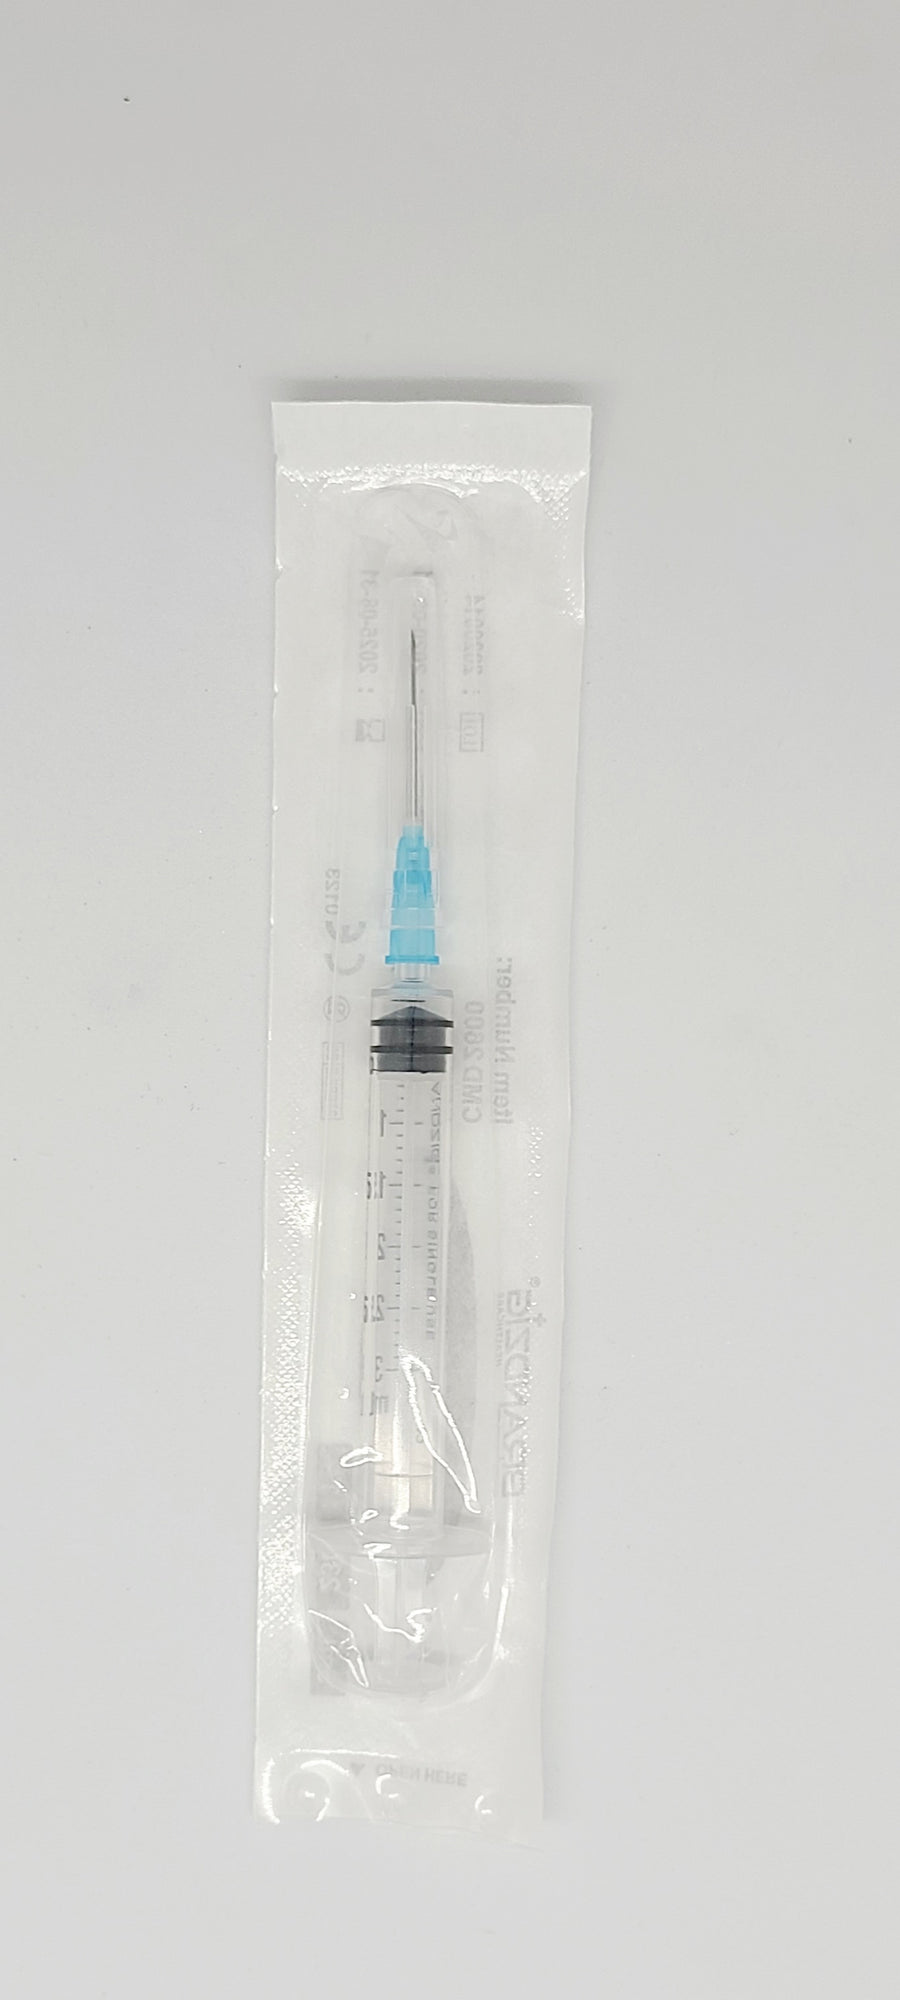 10mL Syringe and needle